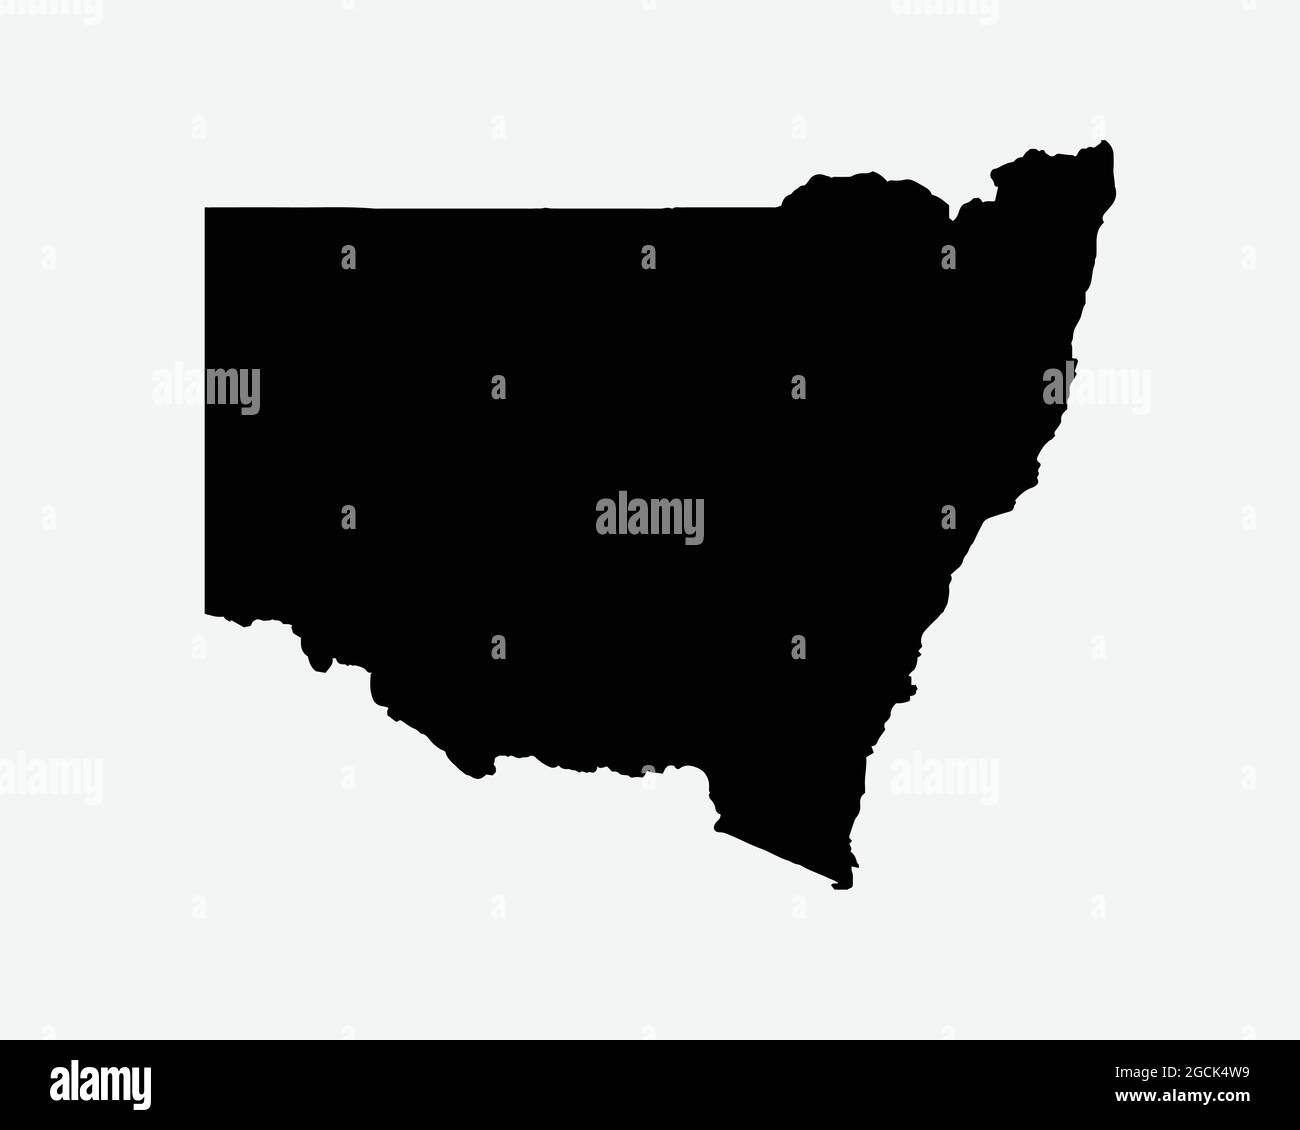 Nuovo Galles del Sud Australia Mappa Silhouette Nera. NSW, Australian state Shape Geography Atlas Border Boundary. Mappa nera isolata su sfondo bianco. Illustrazione Vettoriale